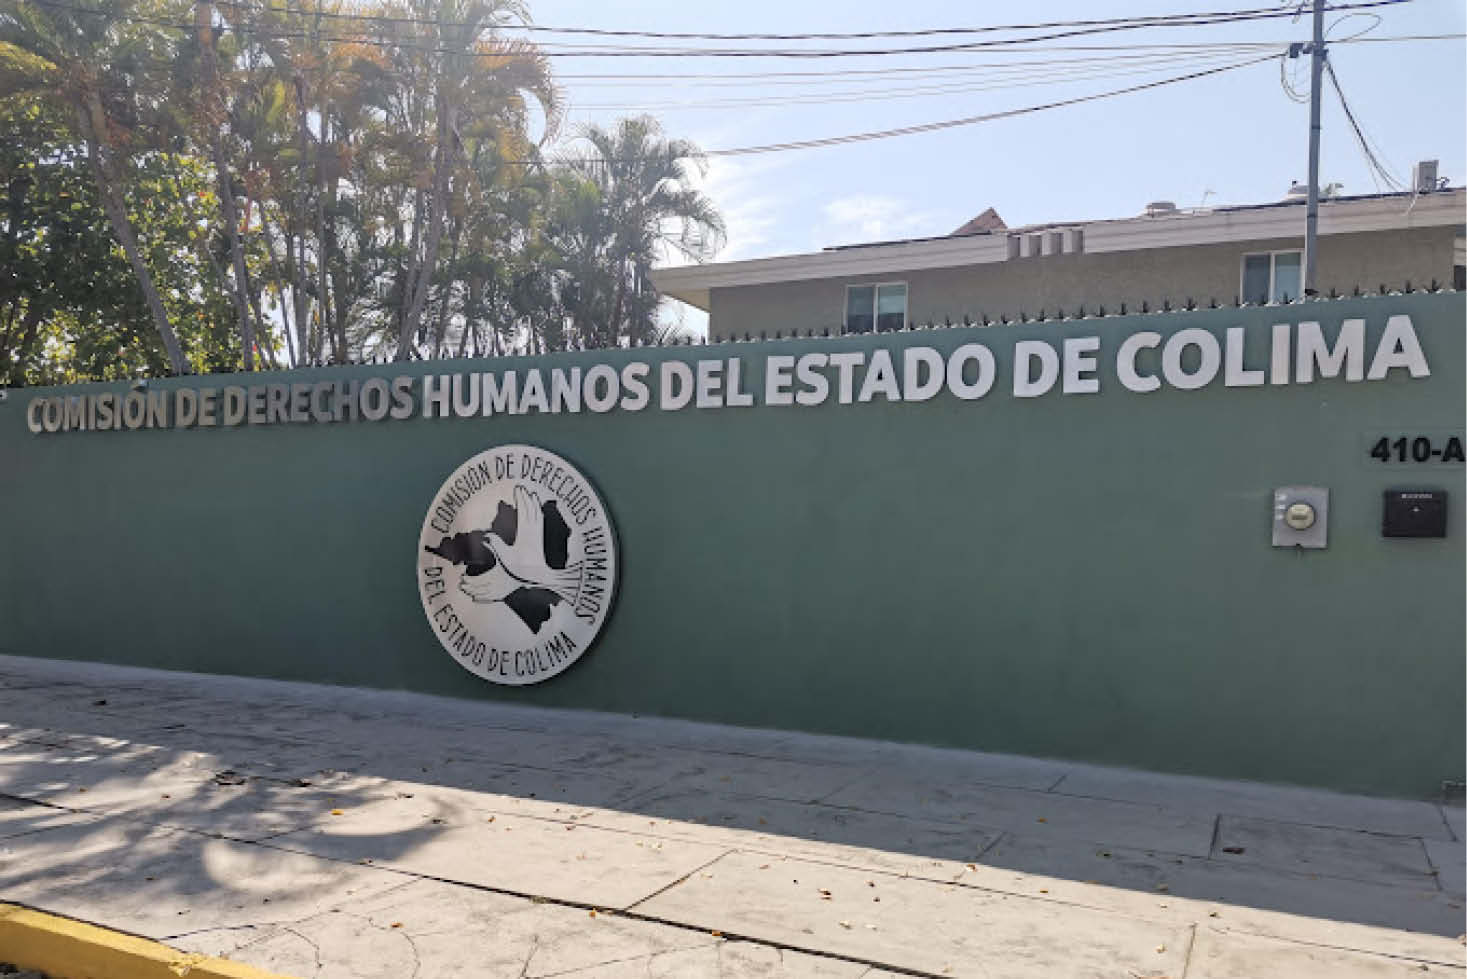 Comisión de Derechos Humanos del estado de Colima (CDHEC).